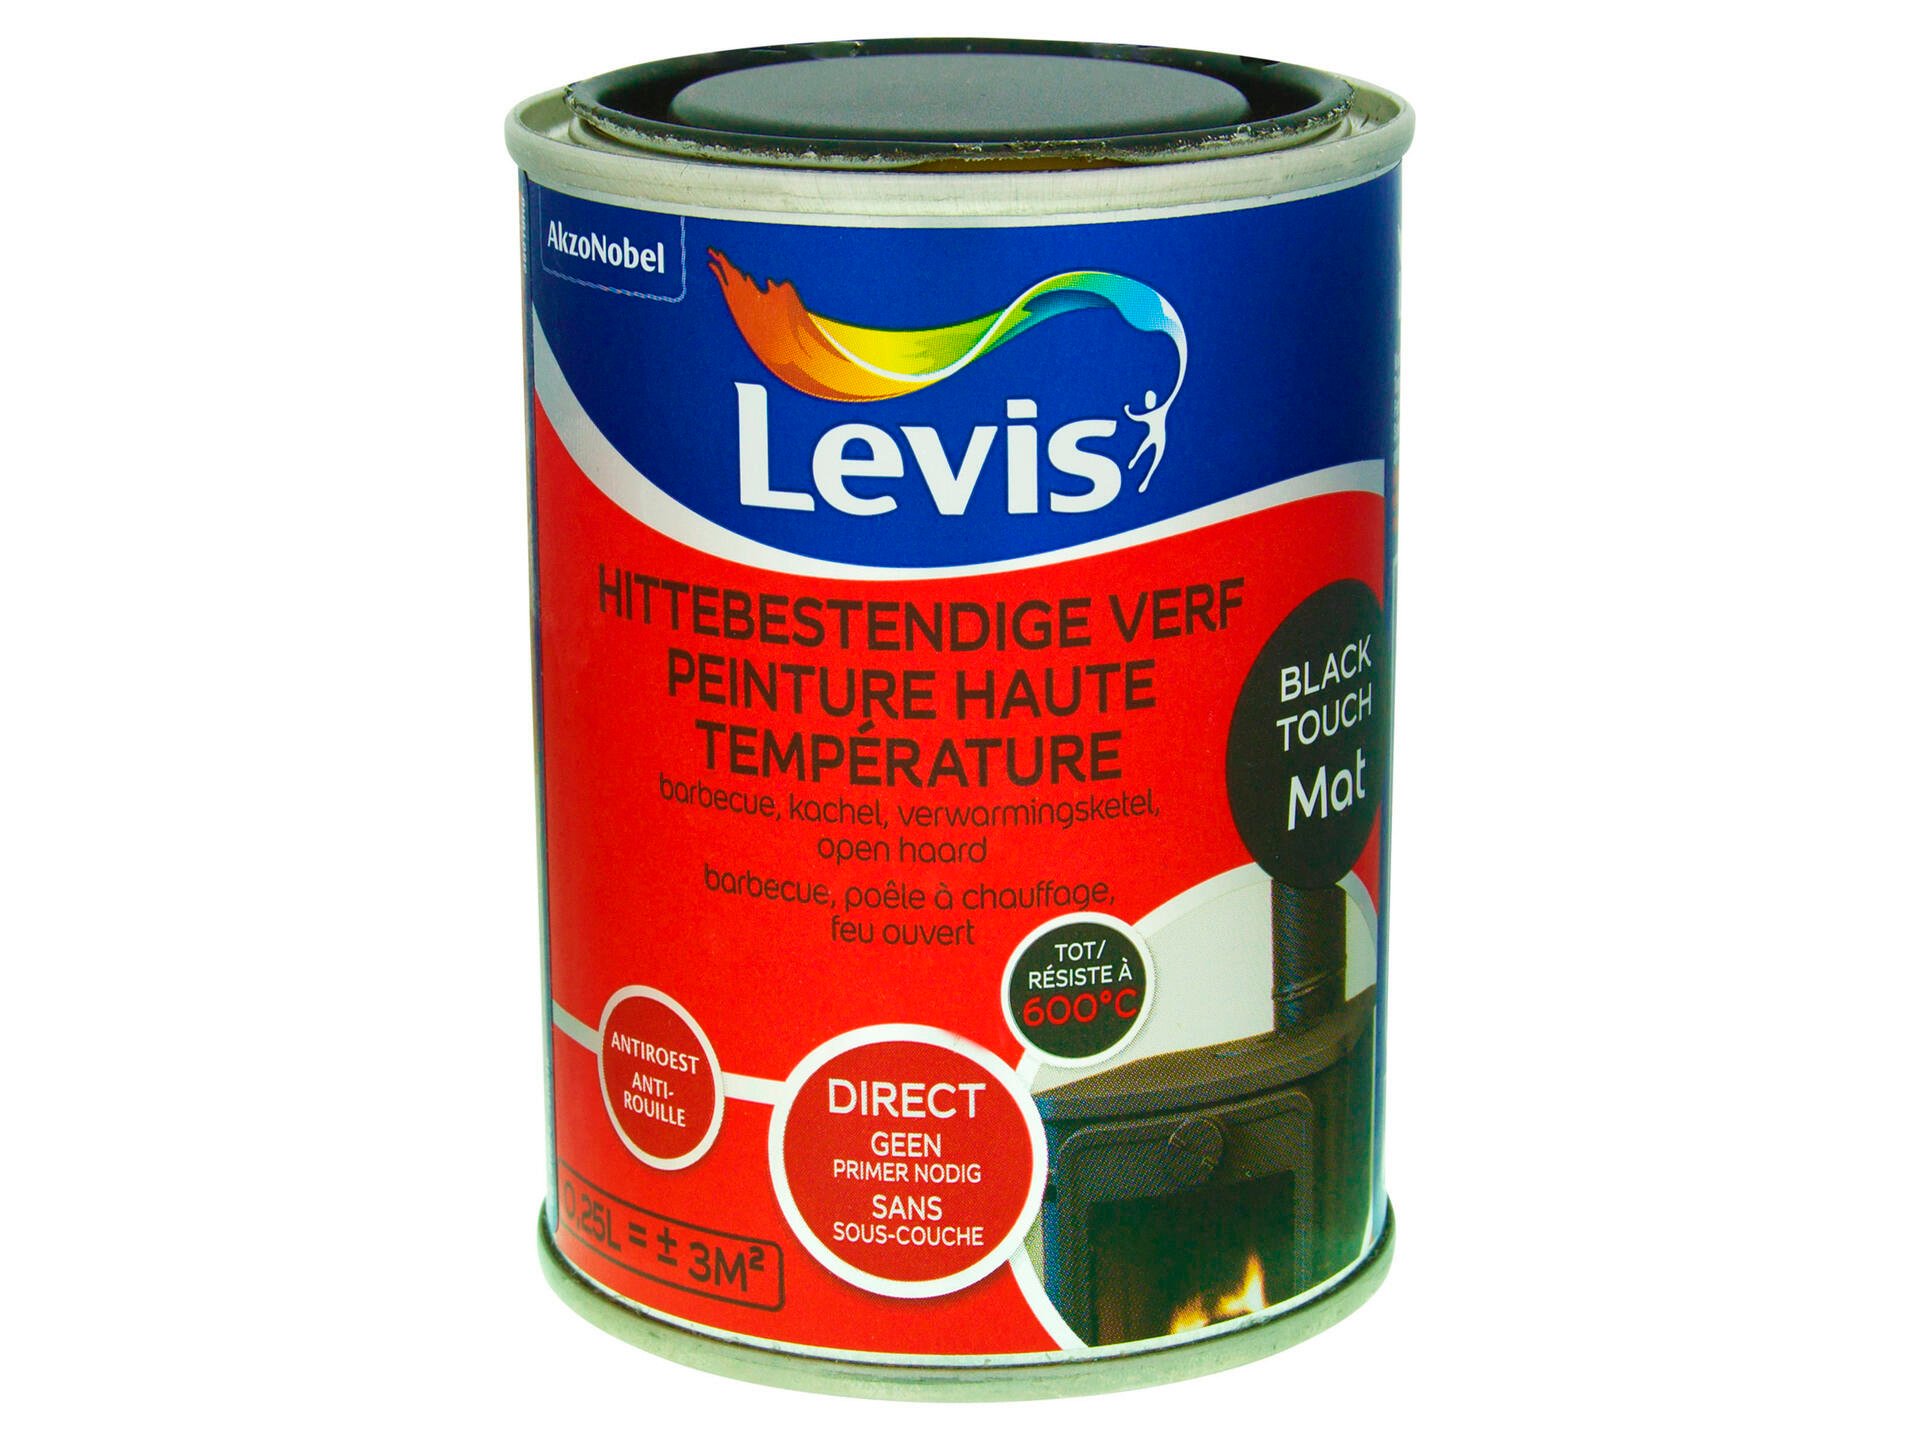 Levis peinture haute température mat 0,25l black touch